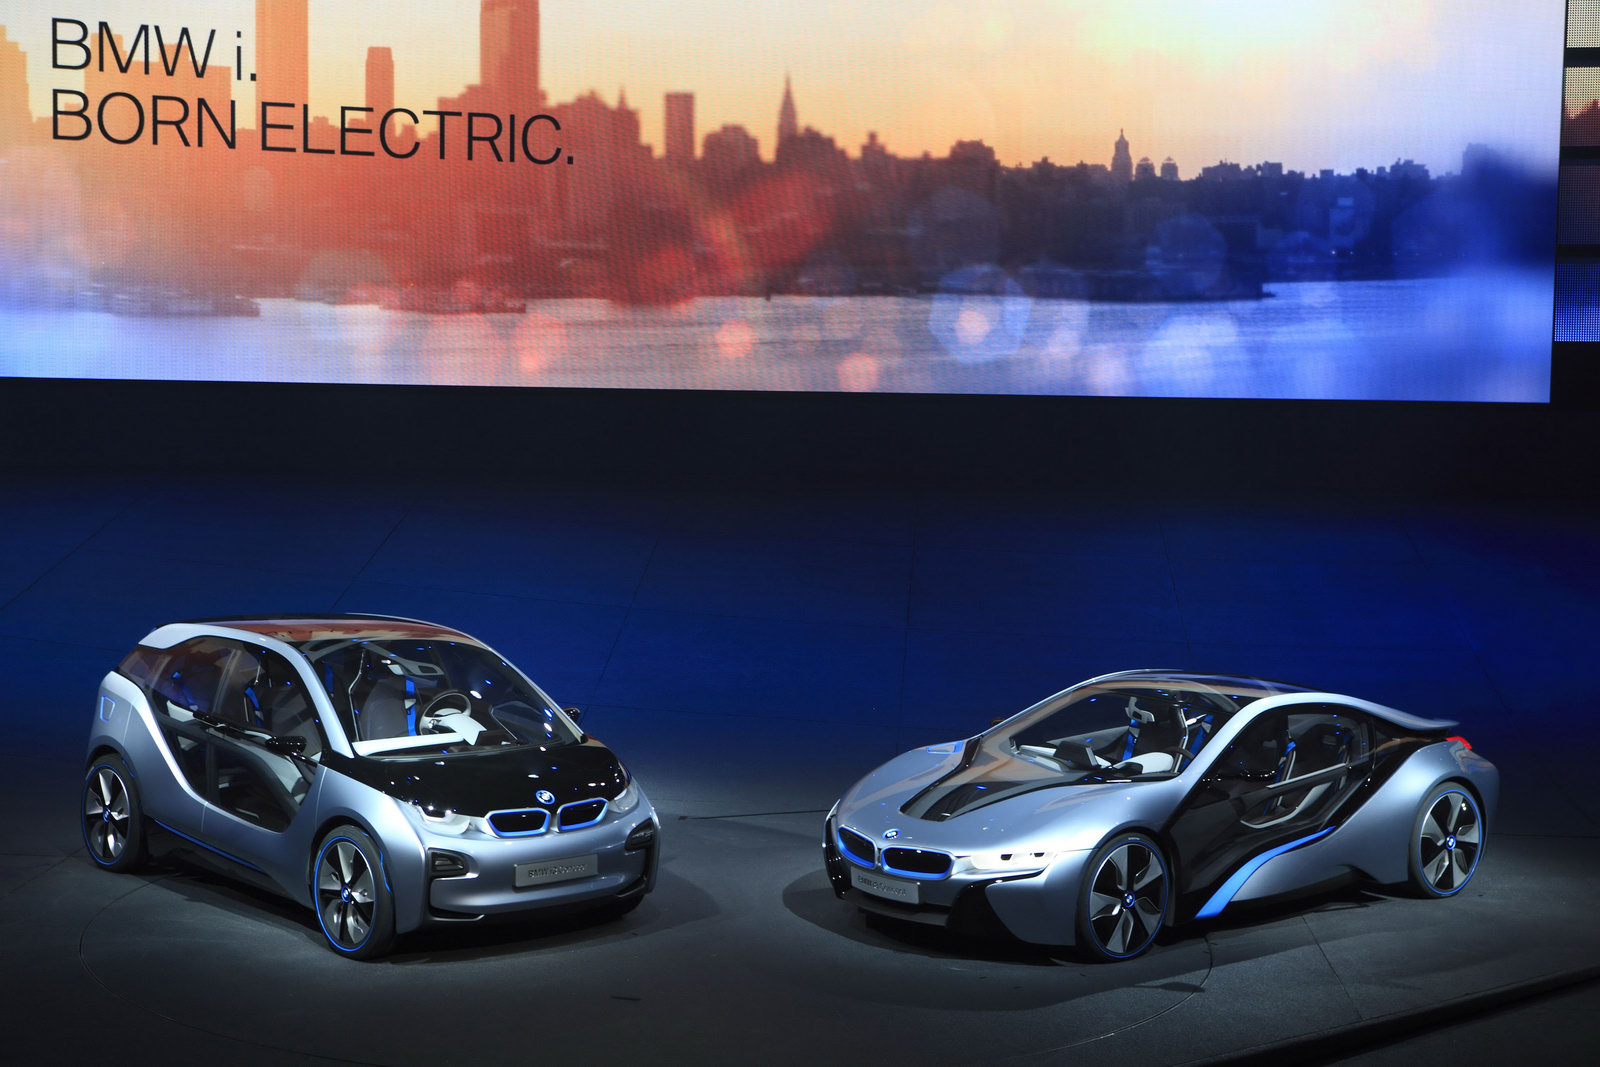 Разработчиков электрических BMW переманили в китайскую фирму